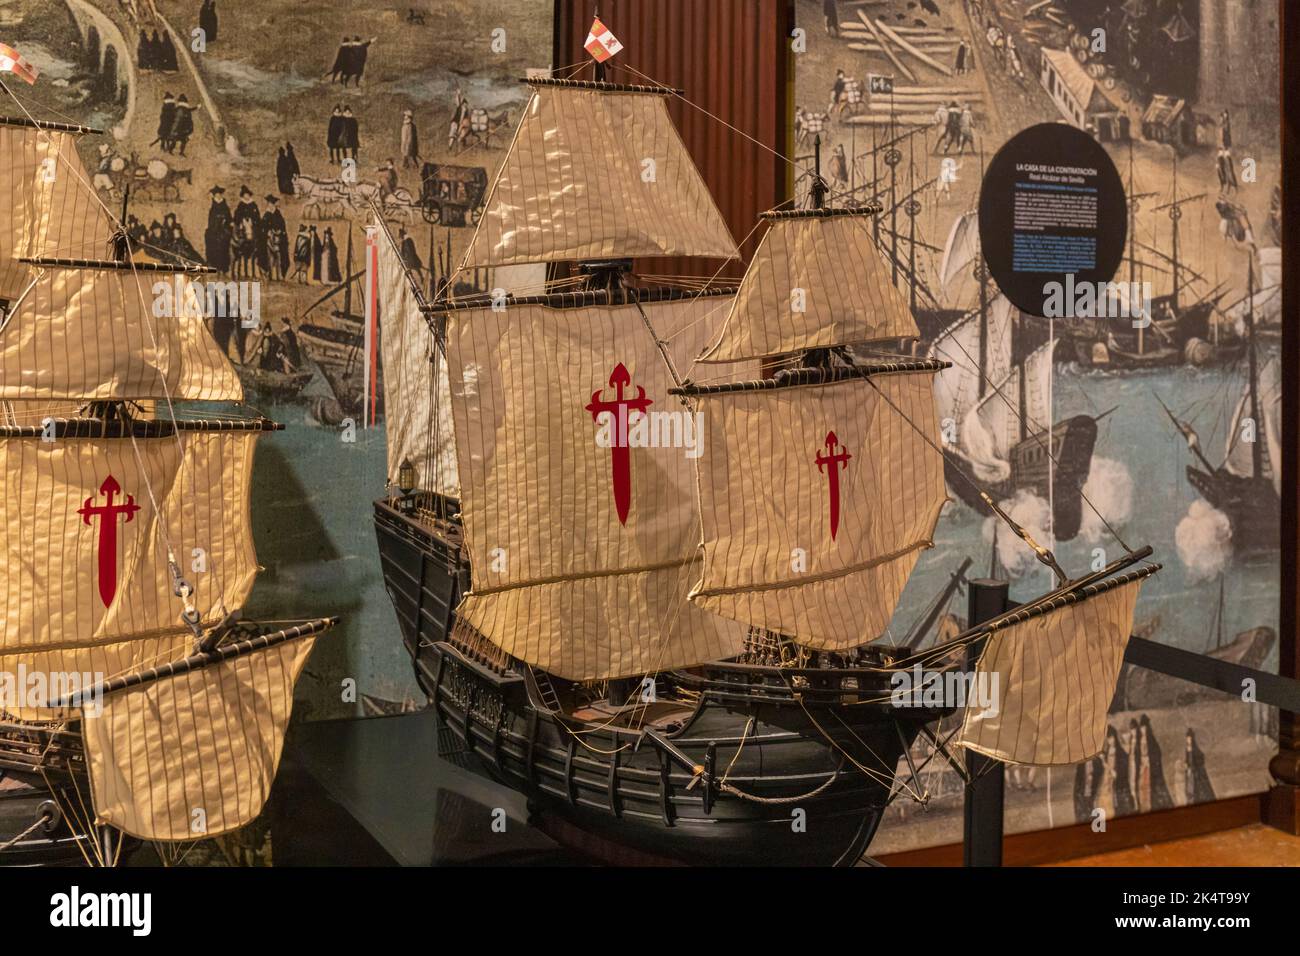 Modell der 120 Tonnen schweren Carrack San Antonio, eines von fünf Schiffen, die in der sogenannten Magellan Expedition oder der Magellan-Elcano Expe gesegelt sind Stockfoto